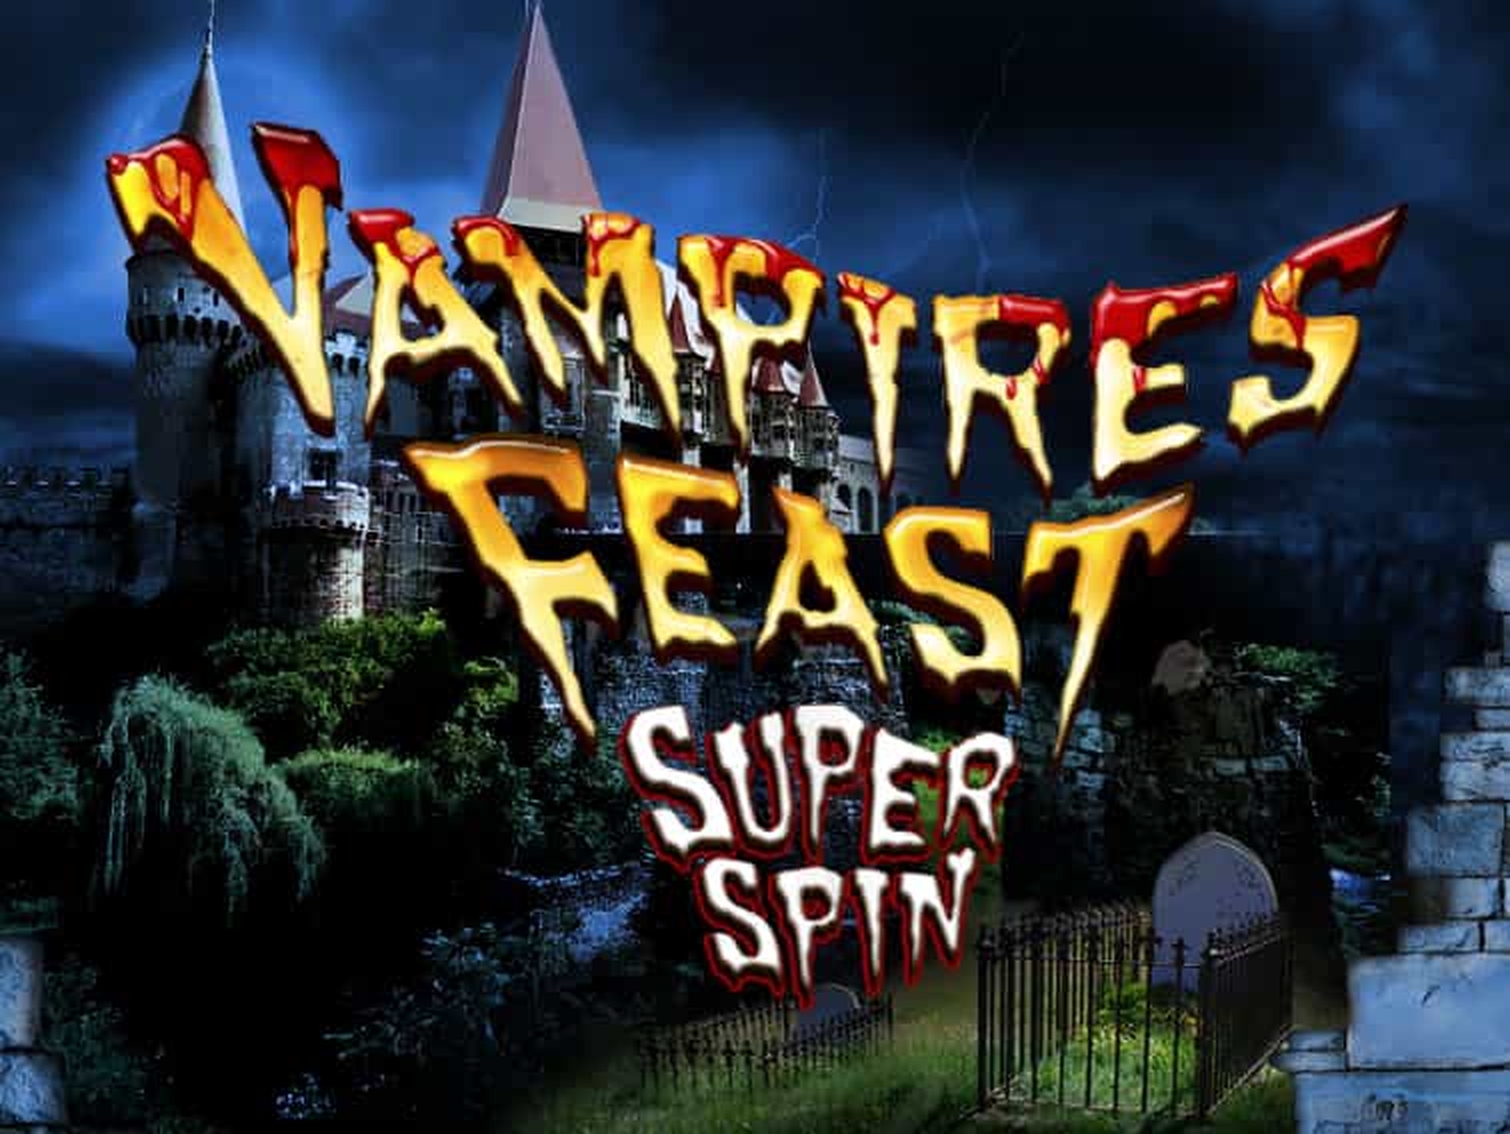 Vampires Feast Super Spin